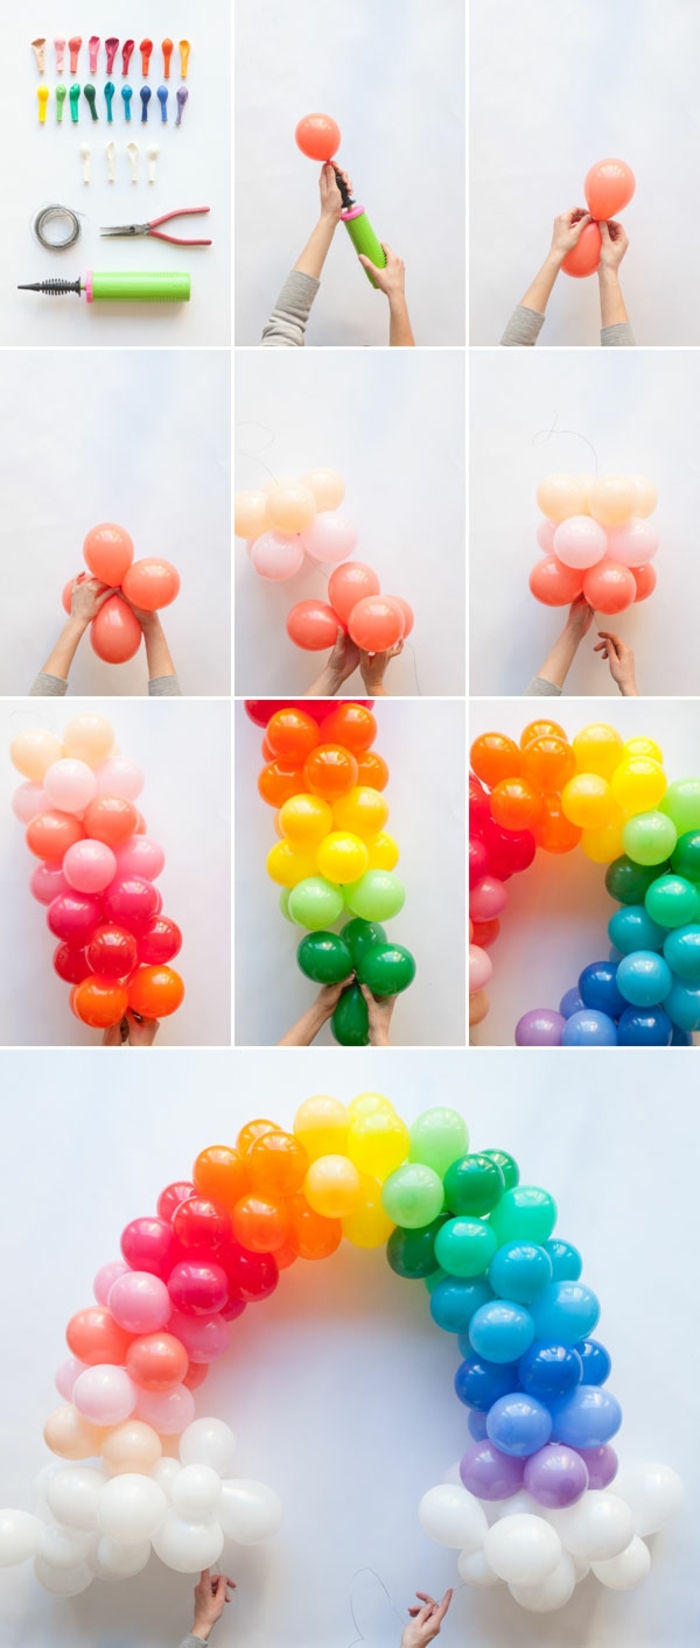 arche de ballons colorés, groupes de ballons multicolores, rassemblés en une arche de ballons groupés par couleurs